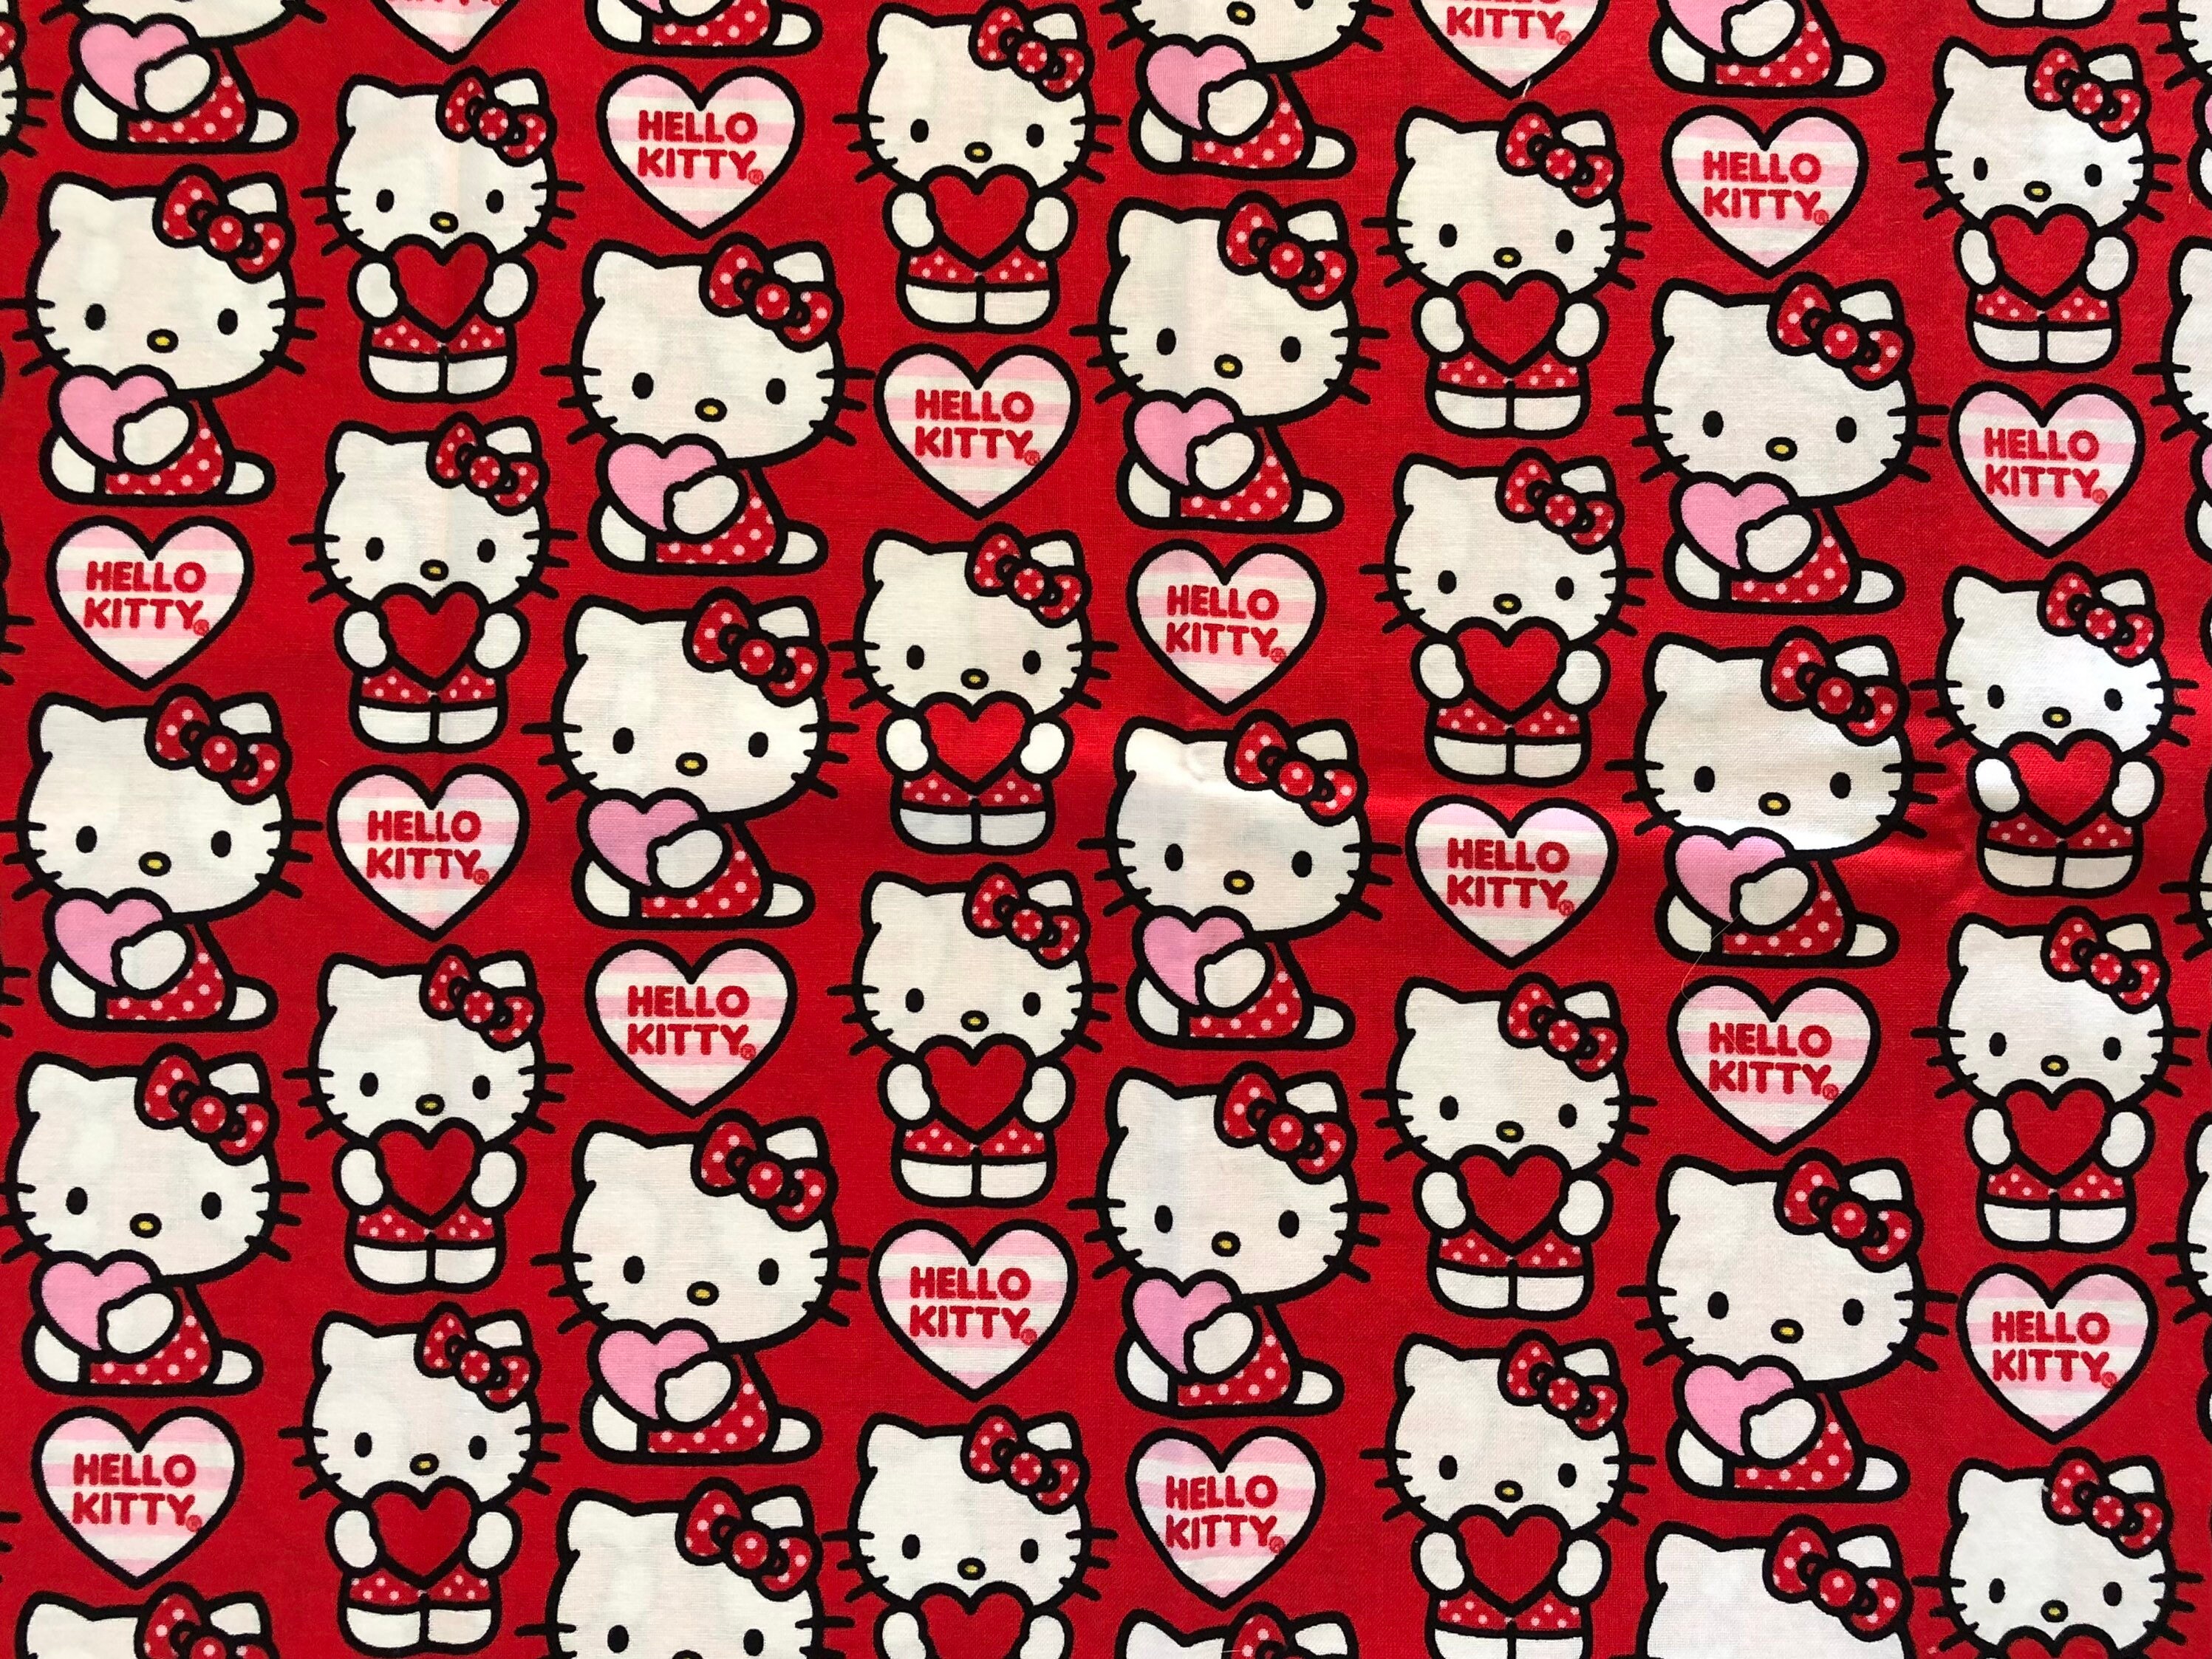 Hello Kitty Valentine's Day Card, I hope she likes it…